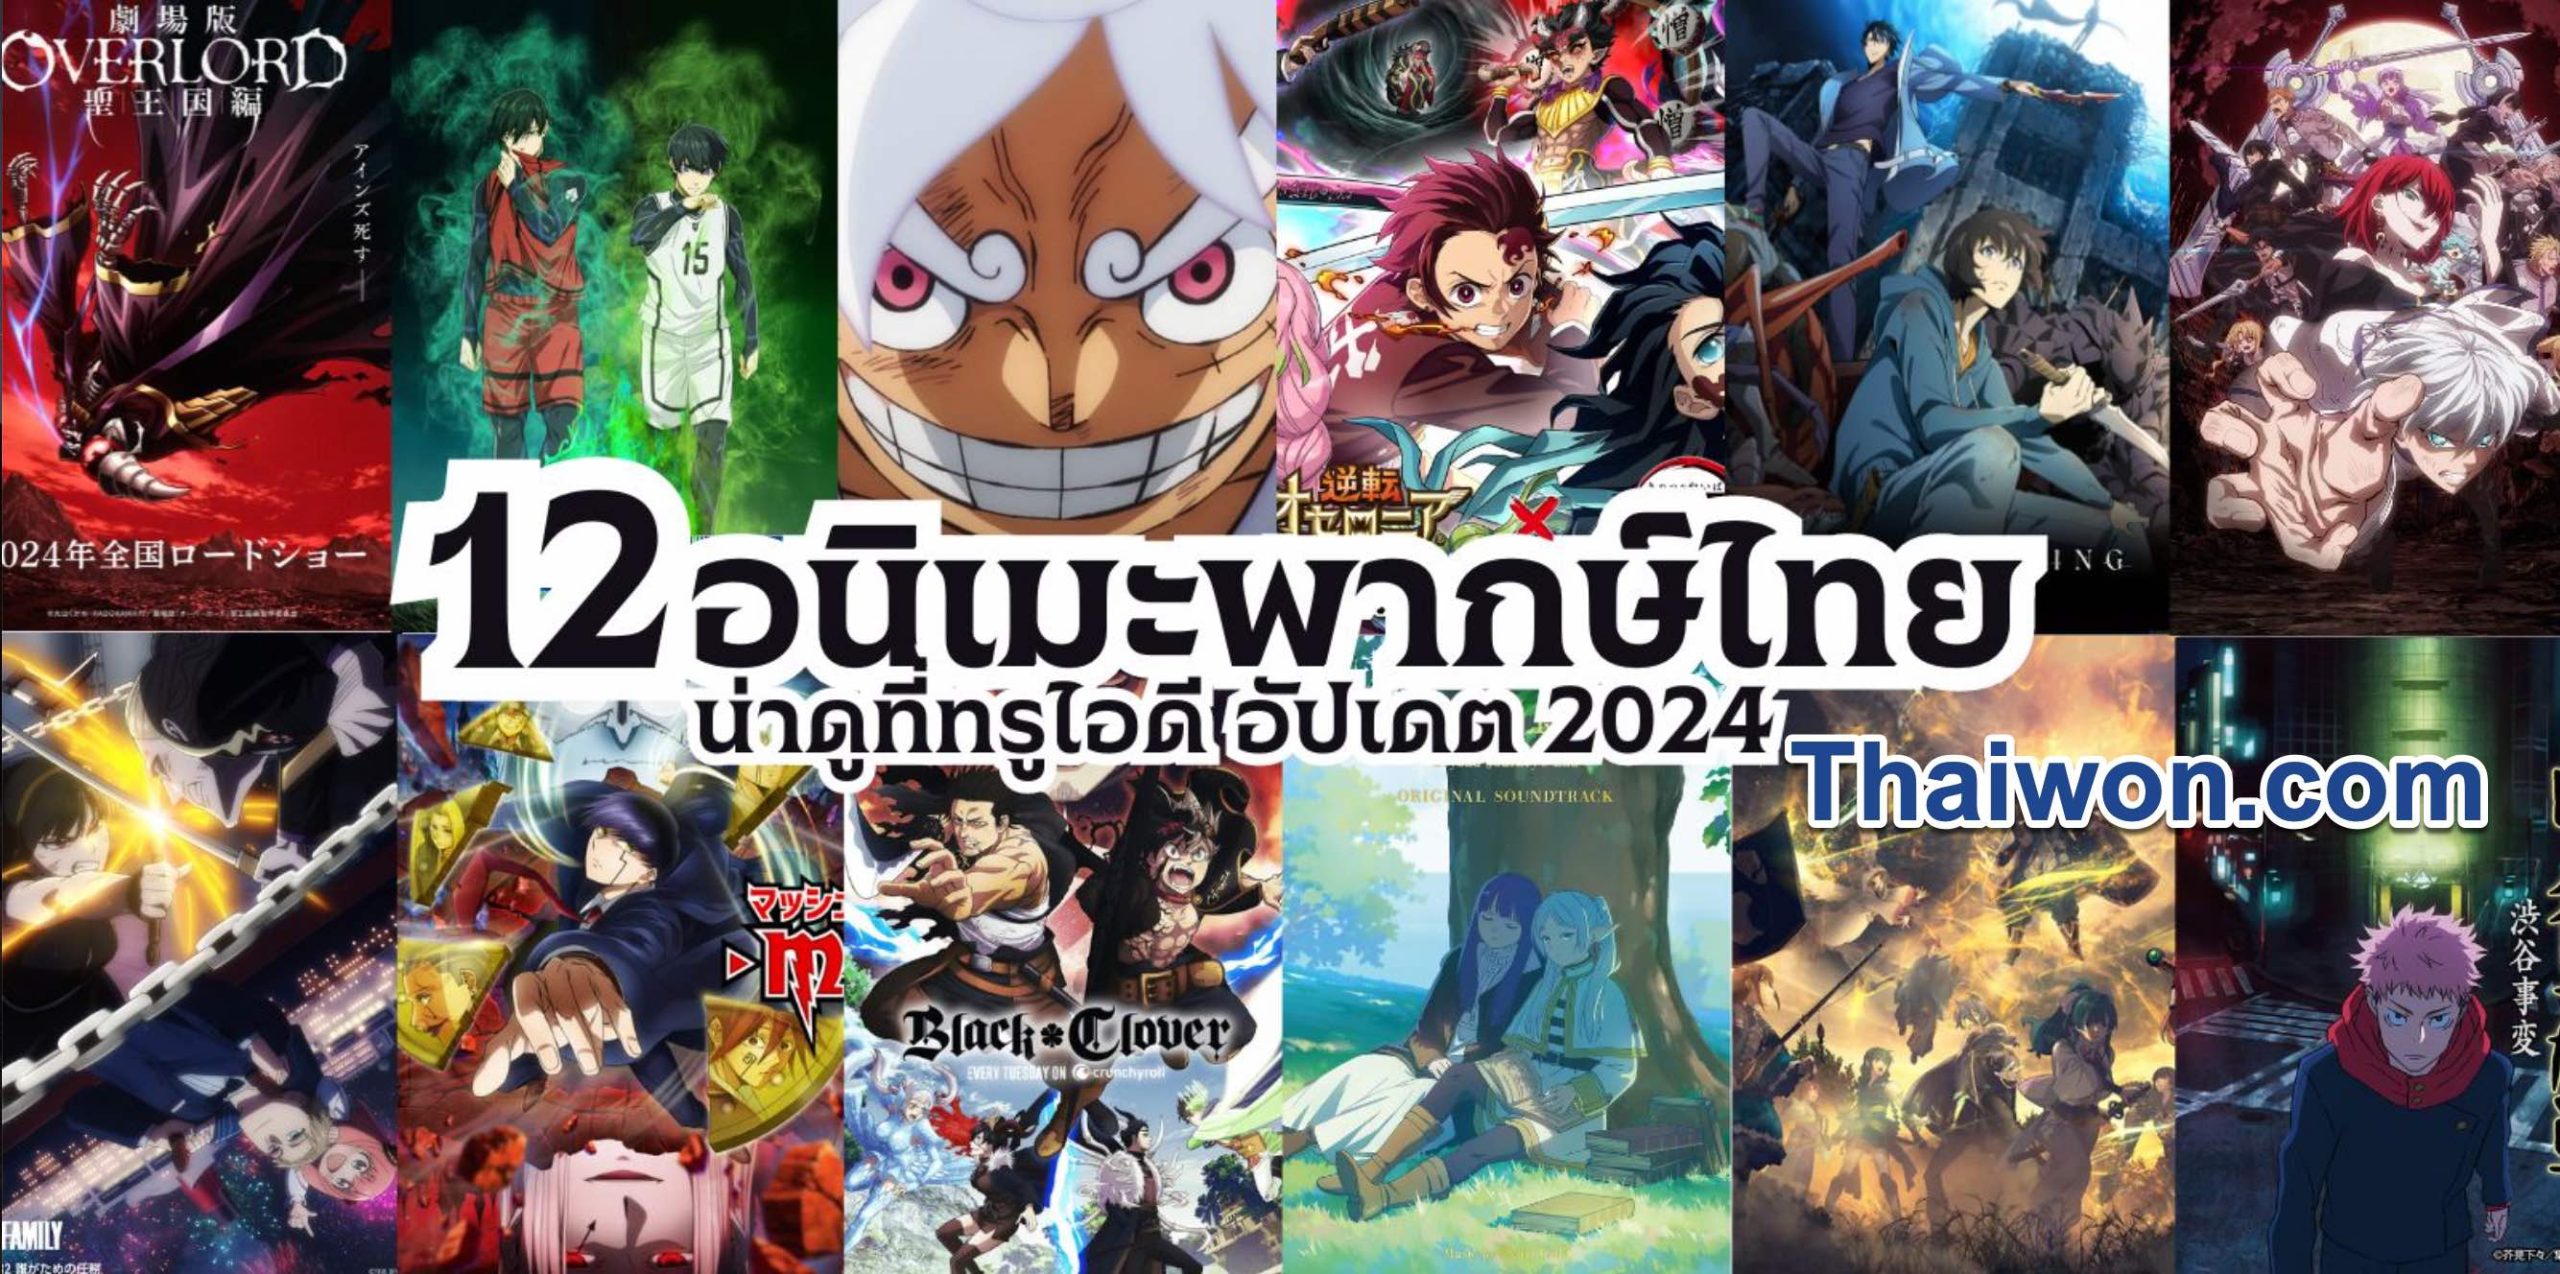 อันดับ อนิเมะพากย์ไทย ปี 2024 พร้อมด้วยรายชื่อหนังใหม่น่าดูในเดือนนี้, อนิเมะพากย์ไทย, อนิเมะพากย์ไทยเต็มเรื่อง, อนิเมะพากย์ไทยใหม่ๆ, อ นิ เมะ พากย์ไทย ต่างโลก, ดูอนิเมะพากย์ไทยทั้งหมด, อนิเมะพากย์ไทย netflix, อนิเมะพากย์ไทยสนุกๆ, อนิเมะจีนพากย์ไทย, อนิเมะพากย์ไทย bilibili